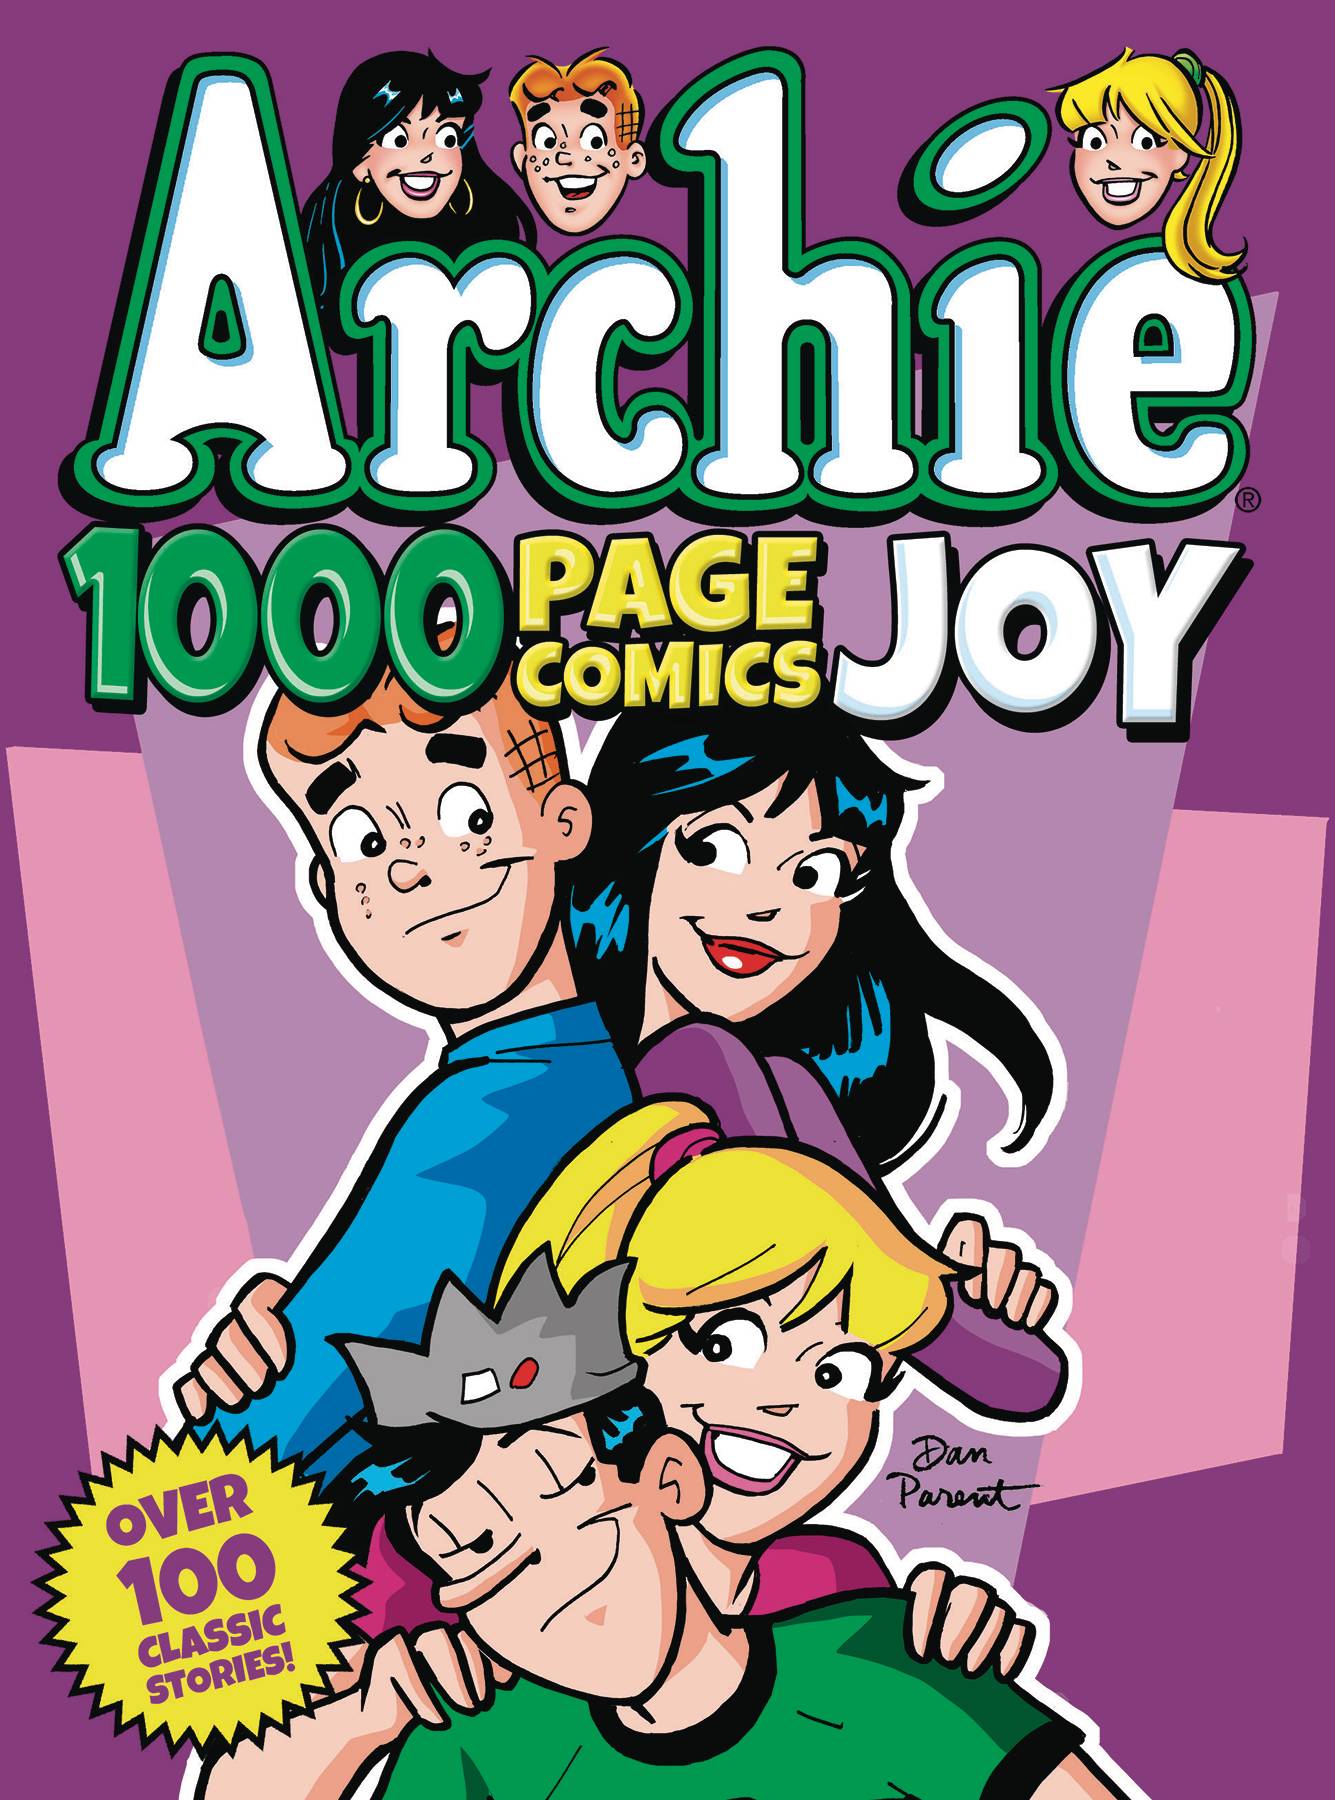 Archie 1000 Page Comics Joy Graphic Novel